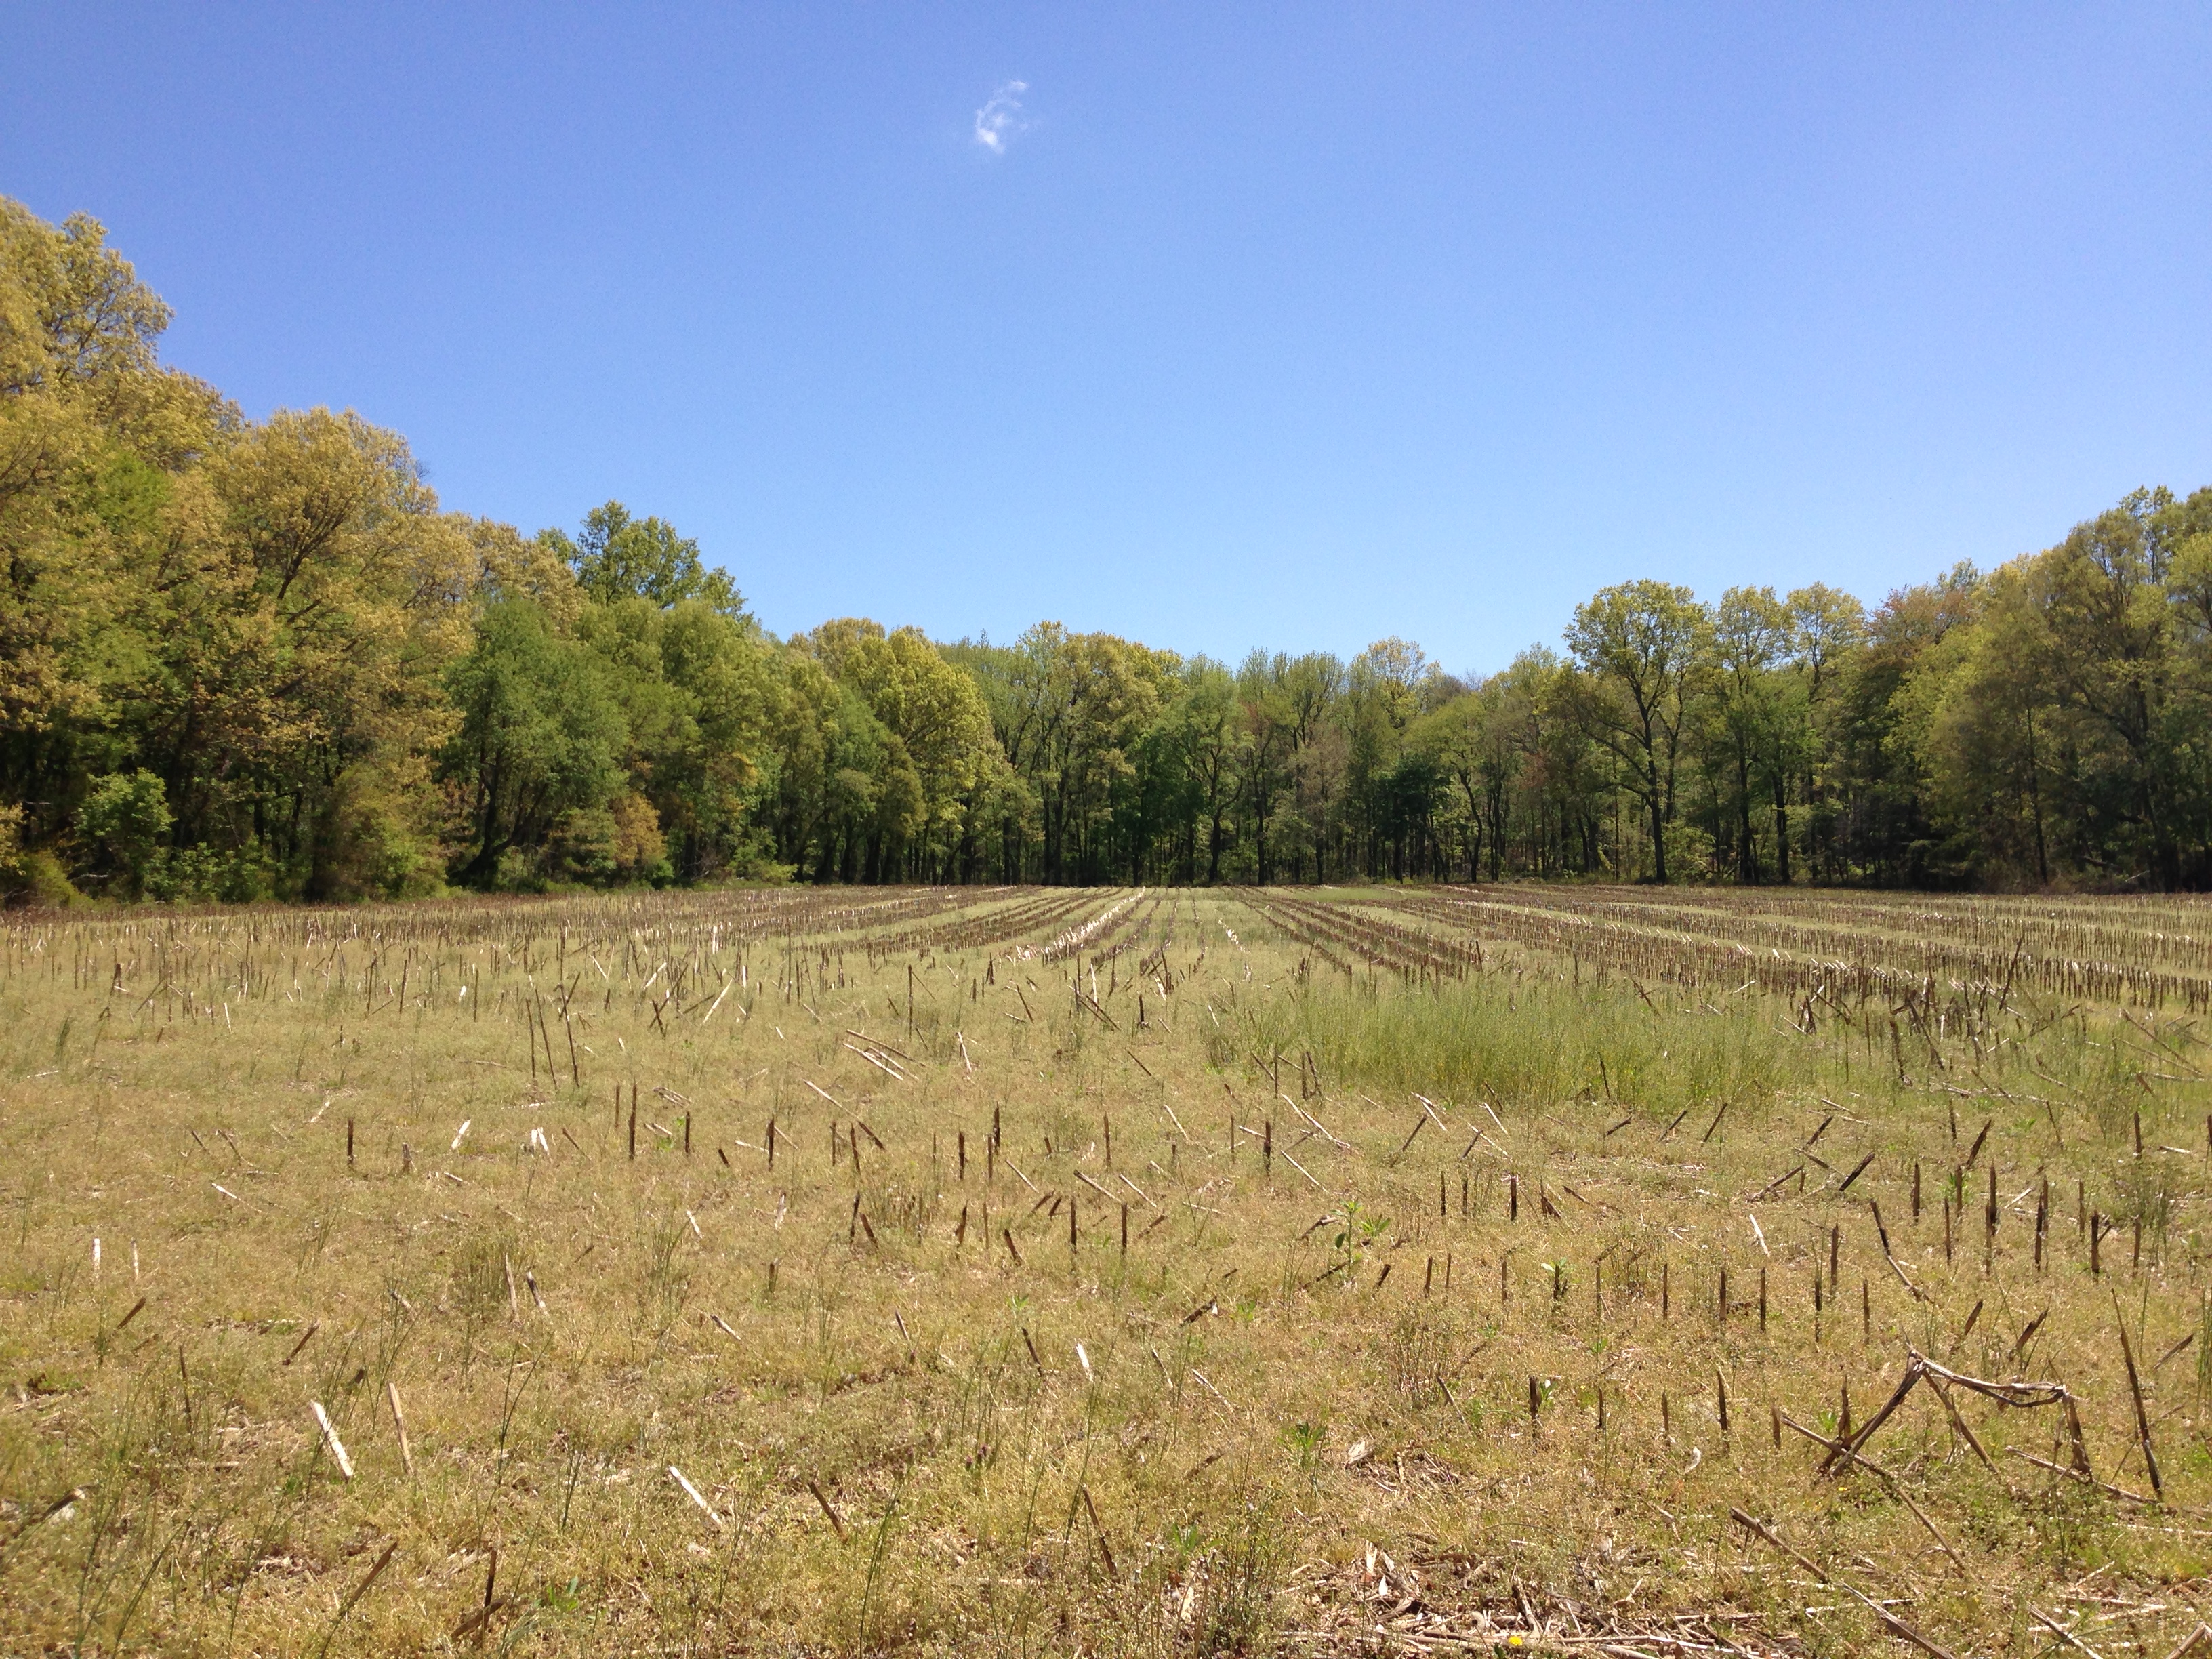 File:2013-05-04 13 16 00 Farm field along Meadowbrook Road in far ...